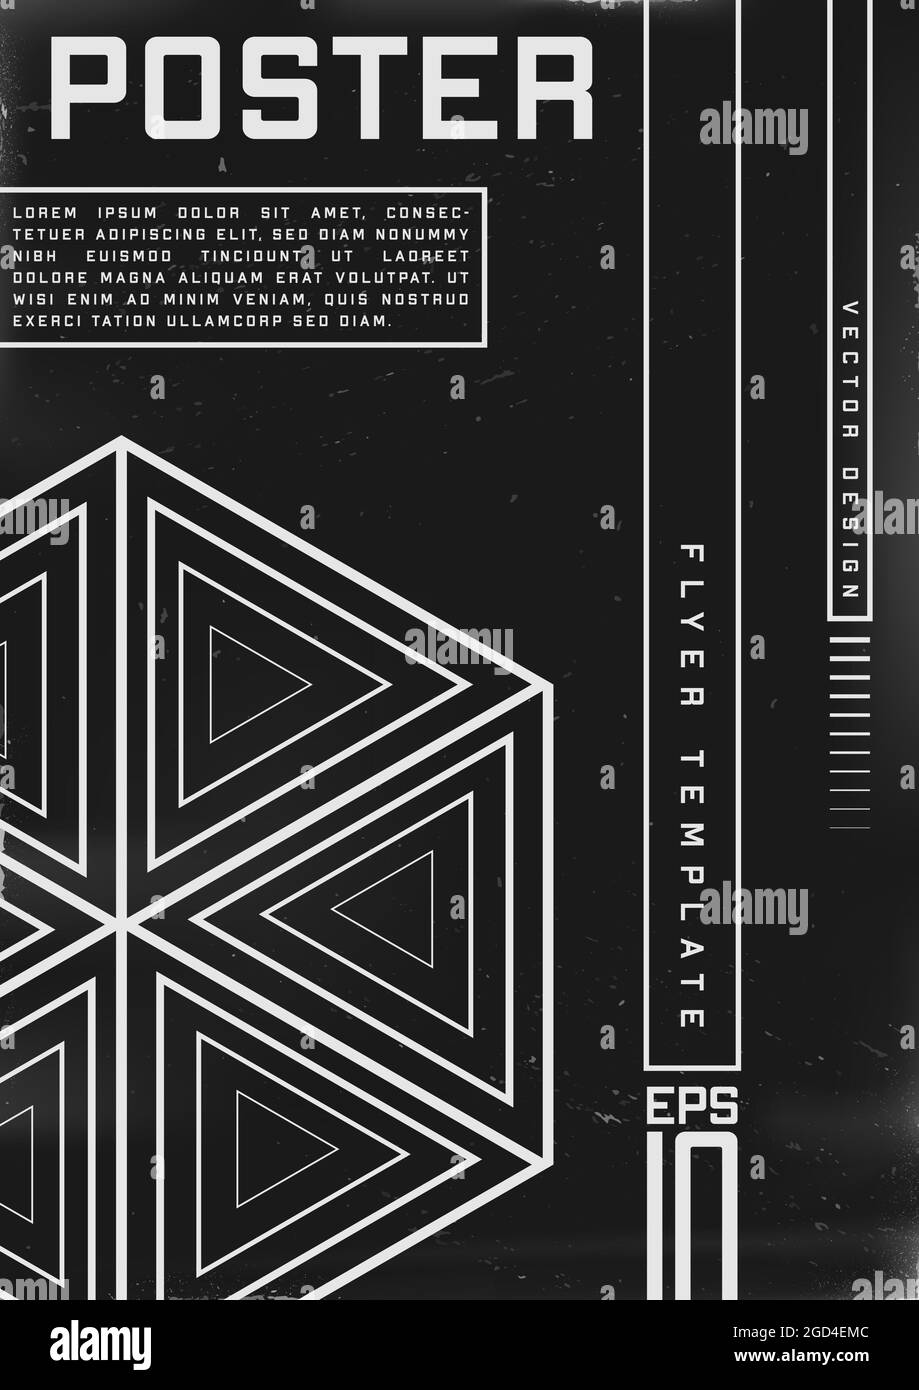 Poster dal design retrovuturistico. Poster in stile Cyberpunk 80s con forma a geometria esagonale con triangoli. Modello shabby graffiato flyer per Illustrazione Vettoriale